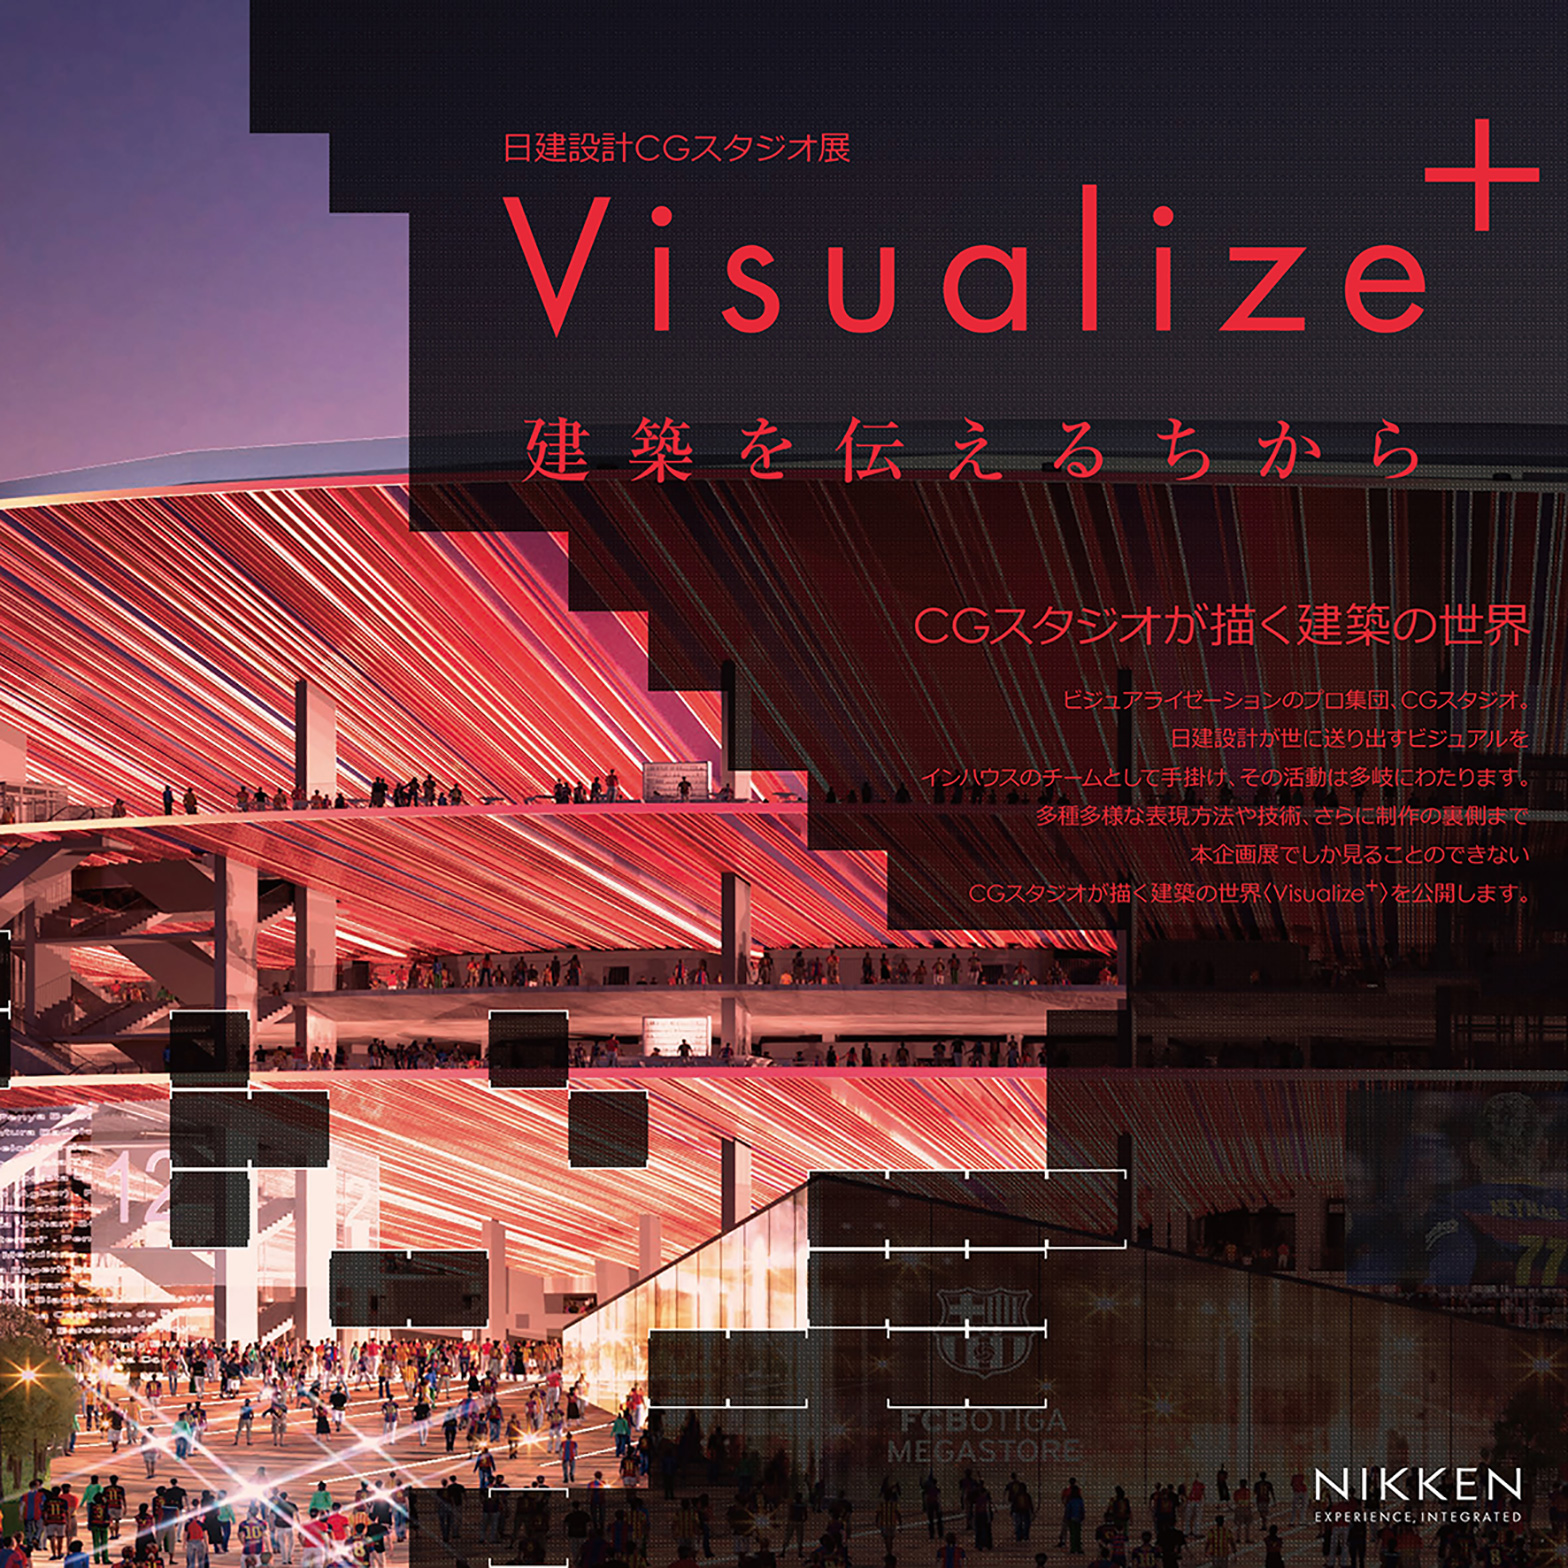 日建设计东京总部将举办名为“Visualize+ ──传递建筑的力量”的CG展览。